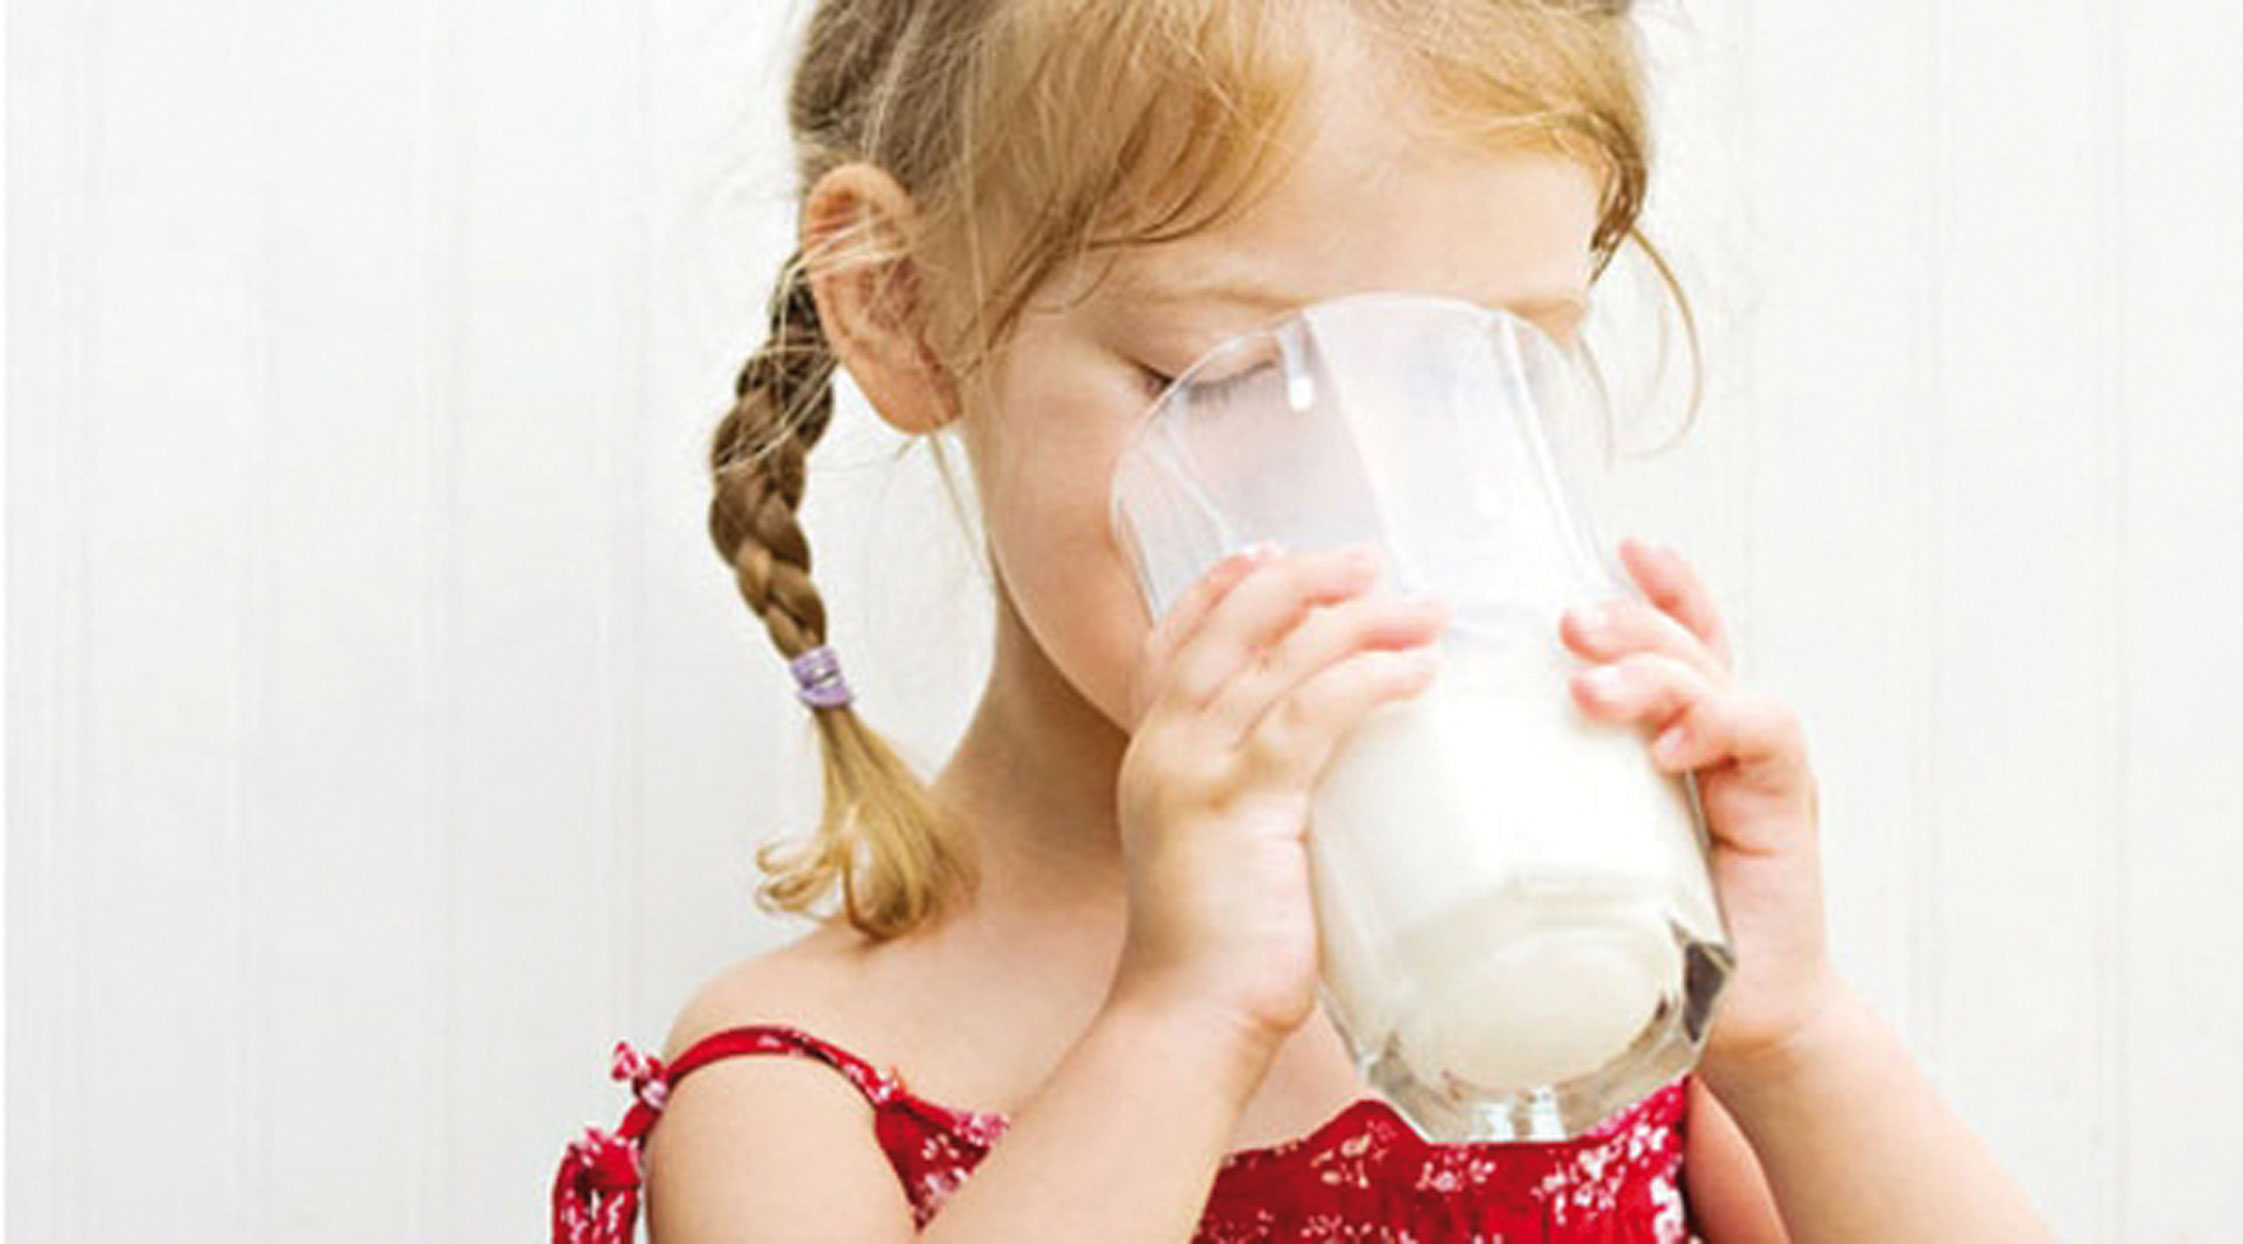 Пьет молоко на английском. Девочка пьет молоко. Молоко для детей. Ребенок пьет молоко. Ребенок девочка молоко.